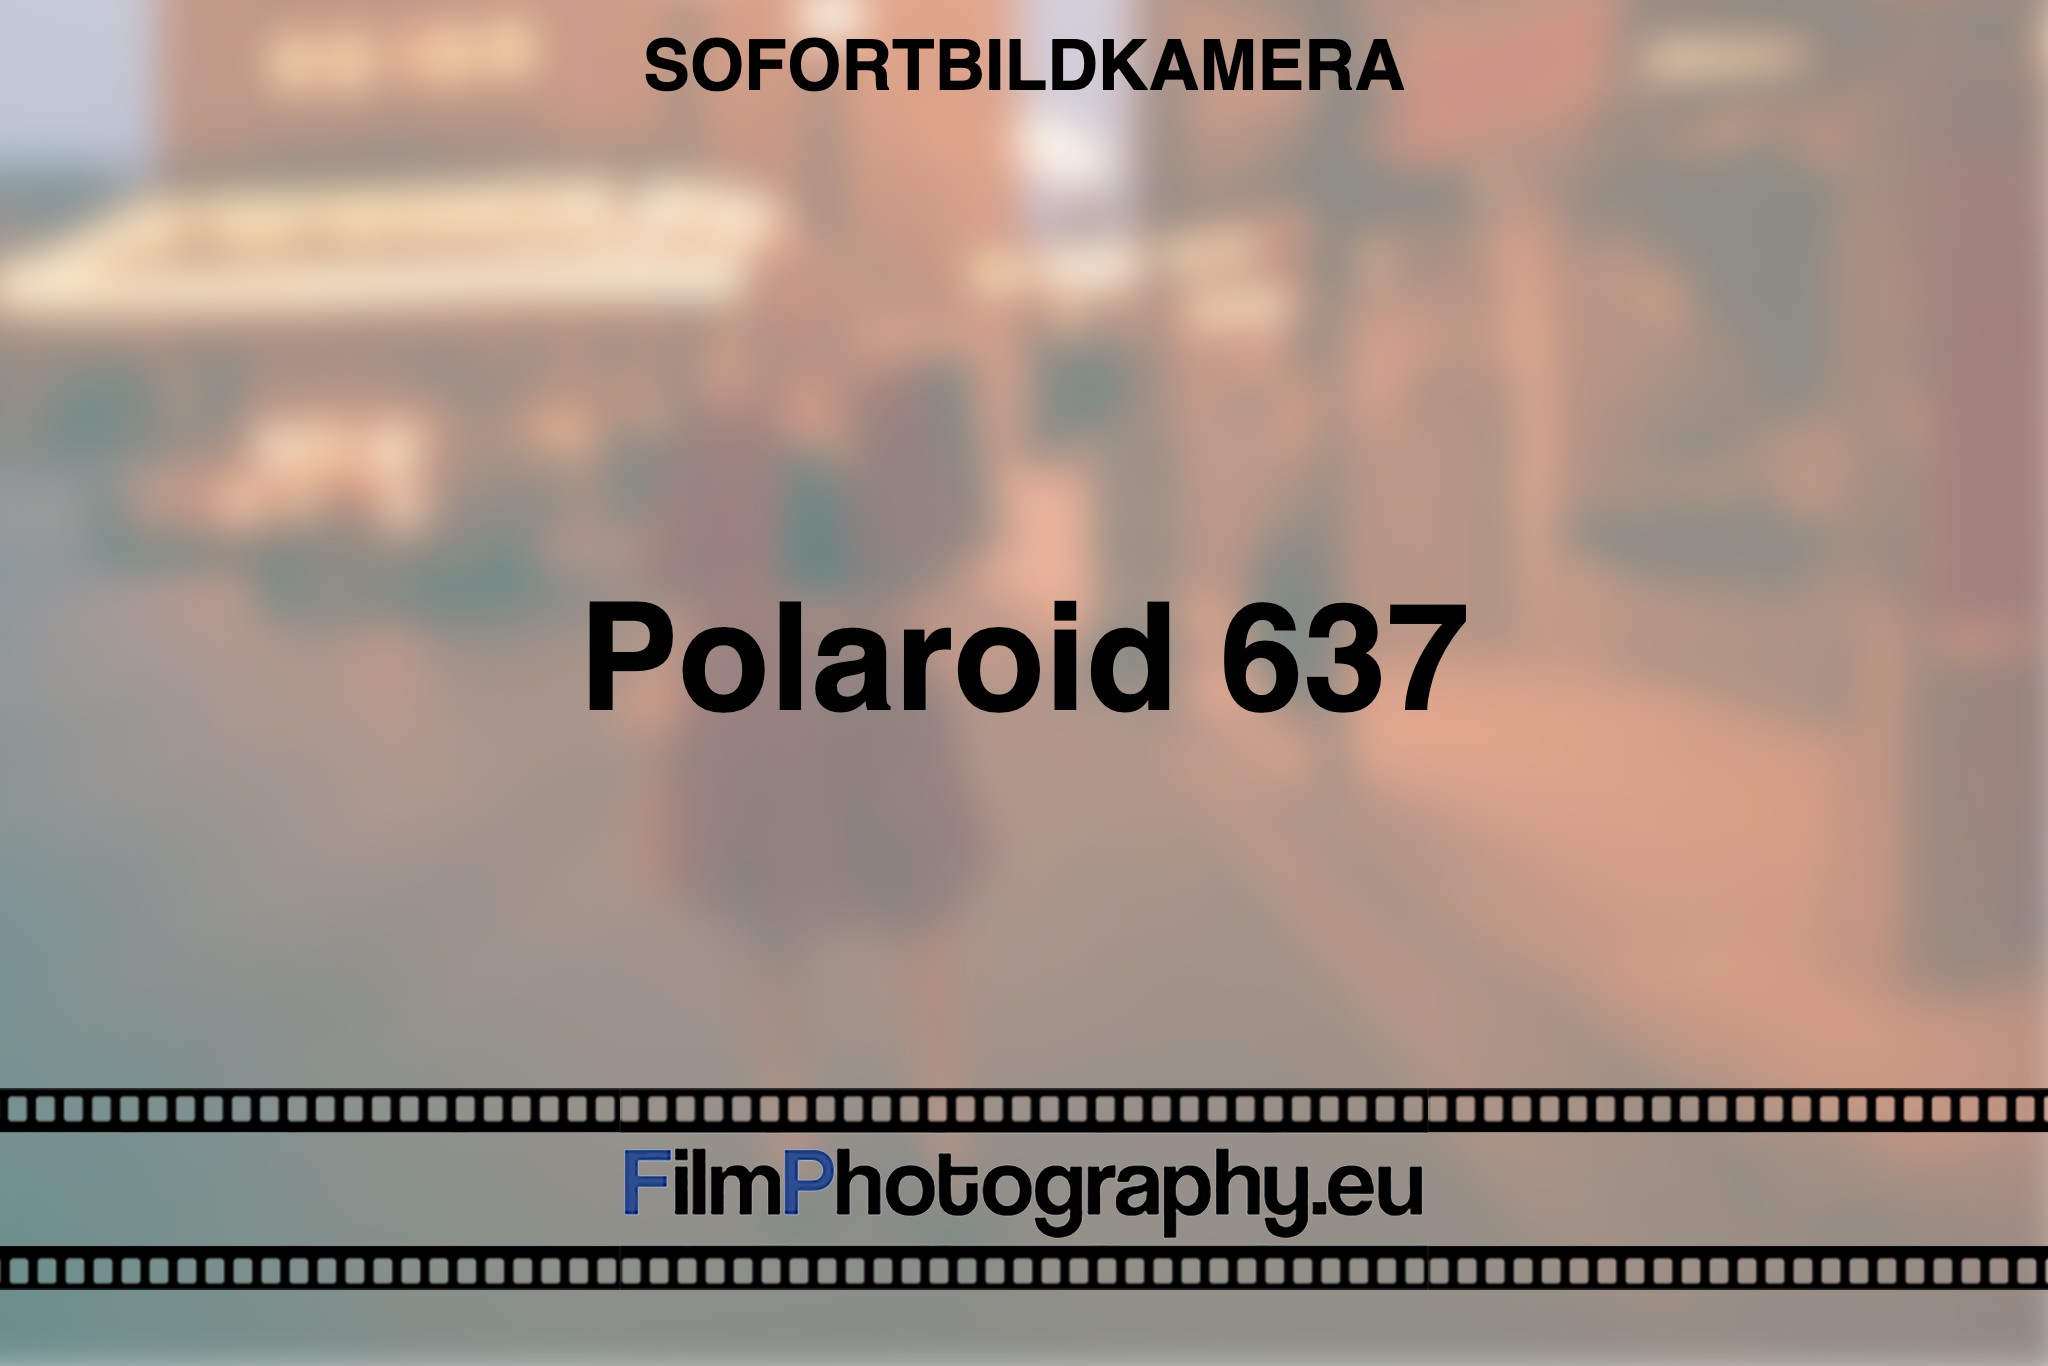 polaroid-637-sofortbildkamera-bnv